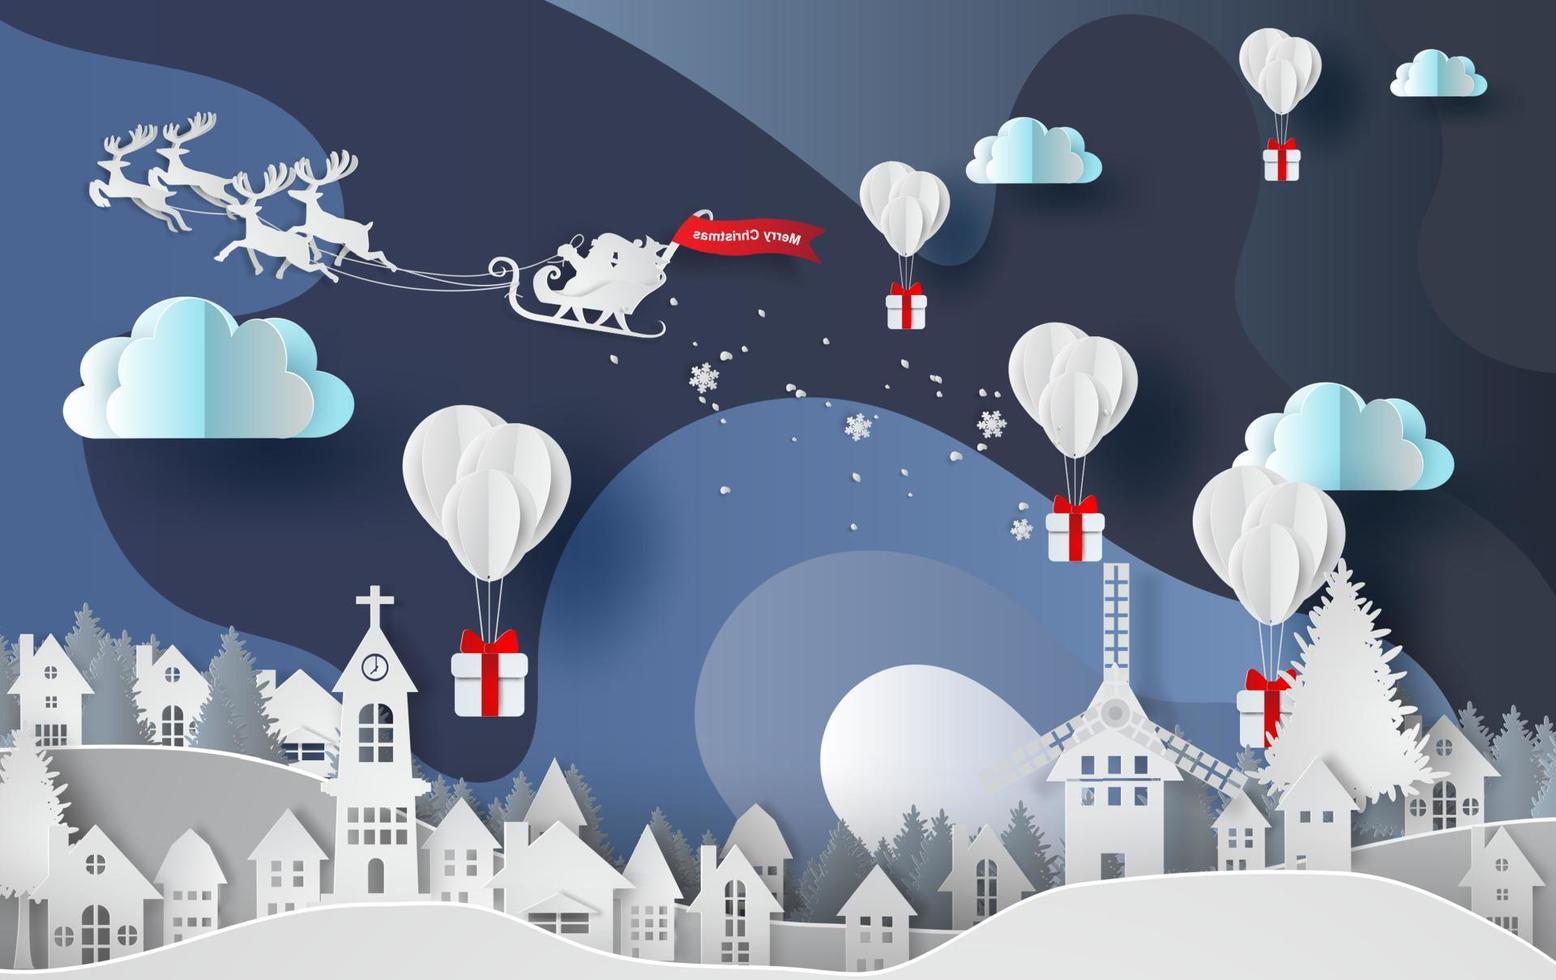 papier kunst en ambacht van ballonnen cadeau op abstracte kromme vorm blauwe hemelachtergrond, stad stad landschap winterseizoen, sneeuwseizoen in de city.vector.illustration vector